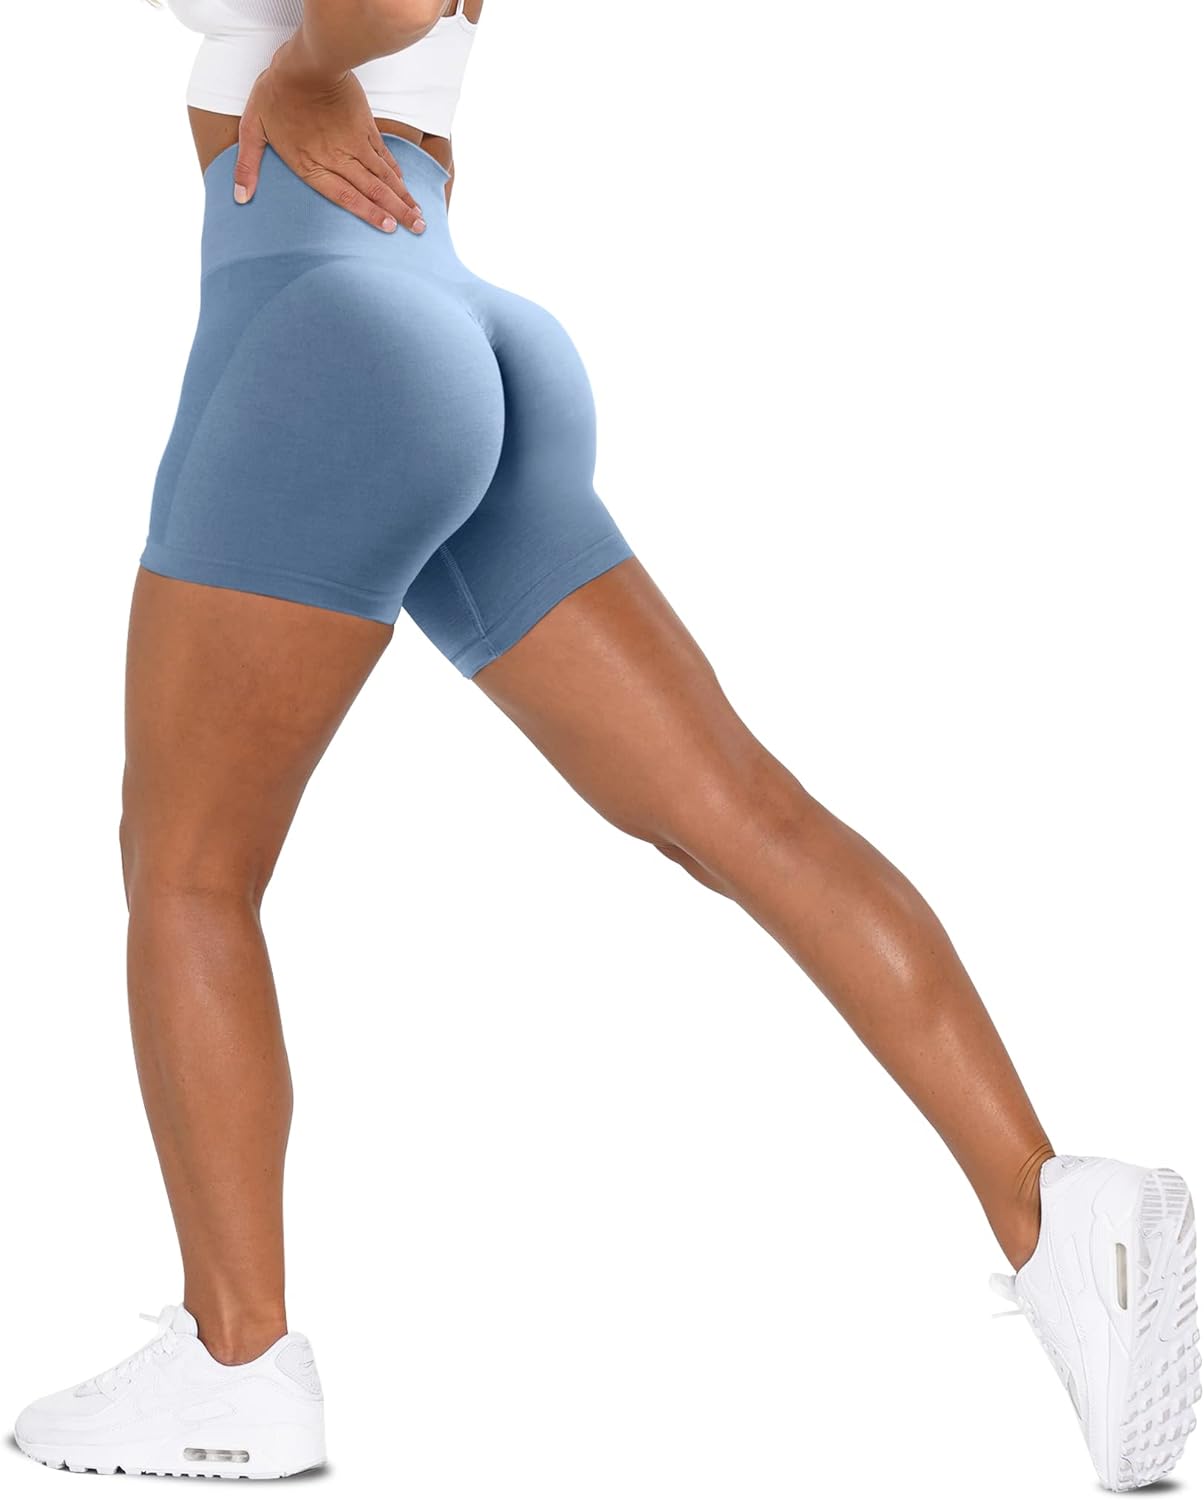 Jenbou Workout Shorts Womens High Waisted Scrunch Butt Lifting